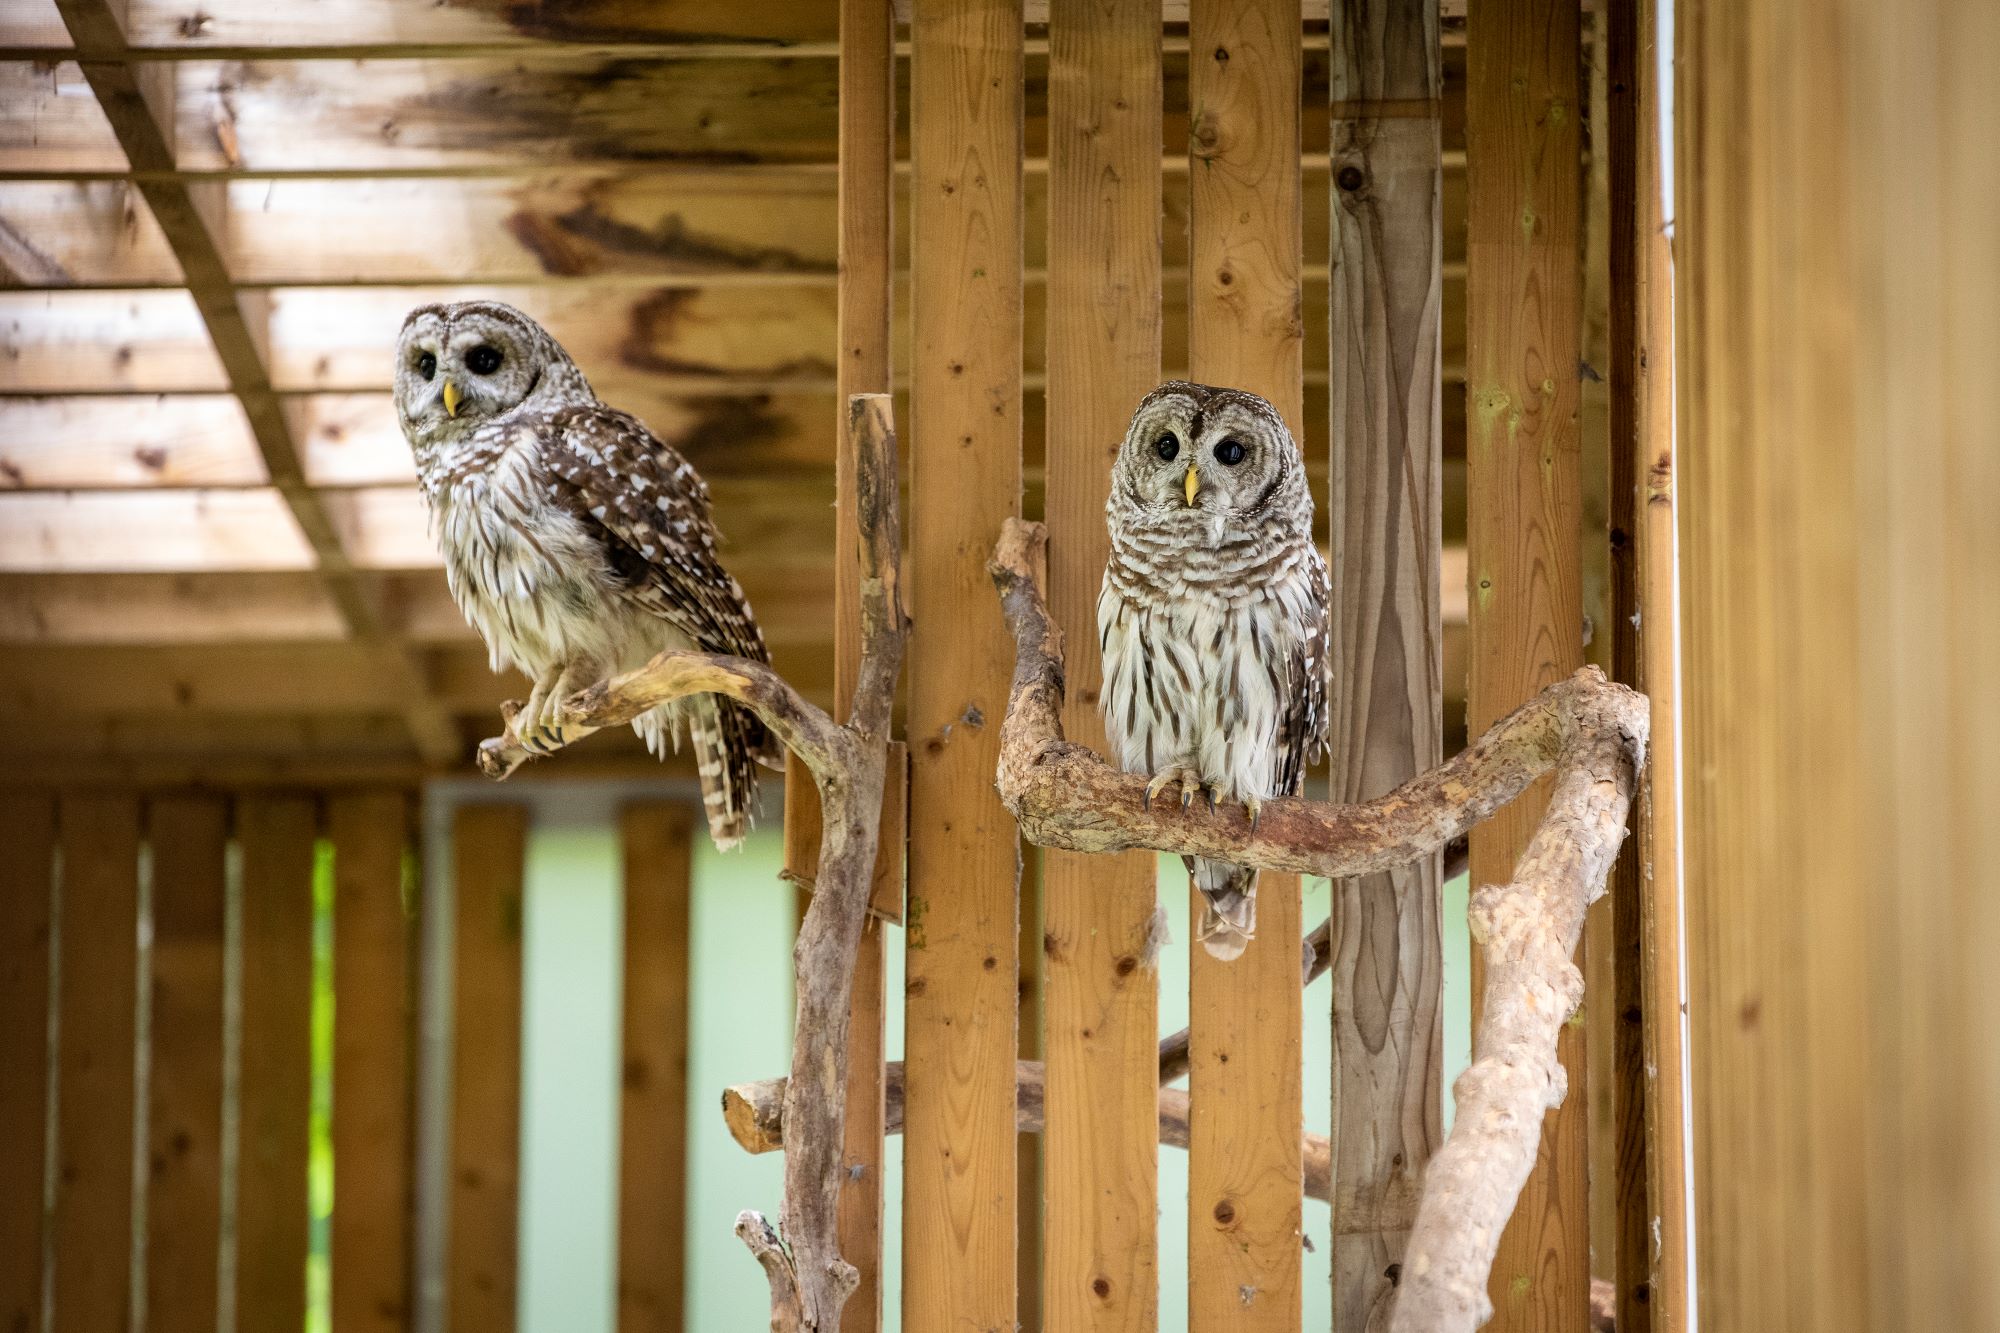 Barred Owl aviairy